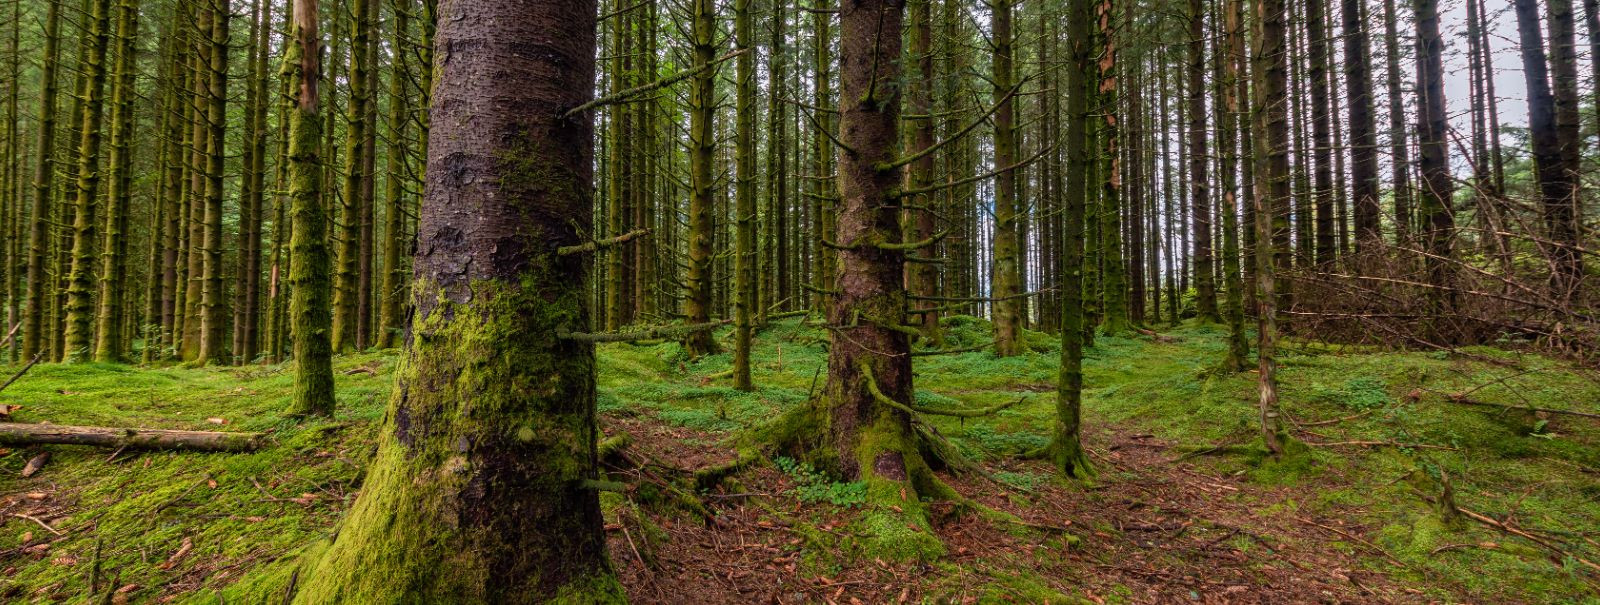 Mr Metsatööd OÜ tegutseb alates 05.2011a. Tegevusalaks on metsa ülestöötamisteenuse osutamine, tegevuspiirkond on Eesti Vabariik ja euroopa naaberriigid. Ettevõ